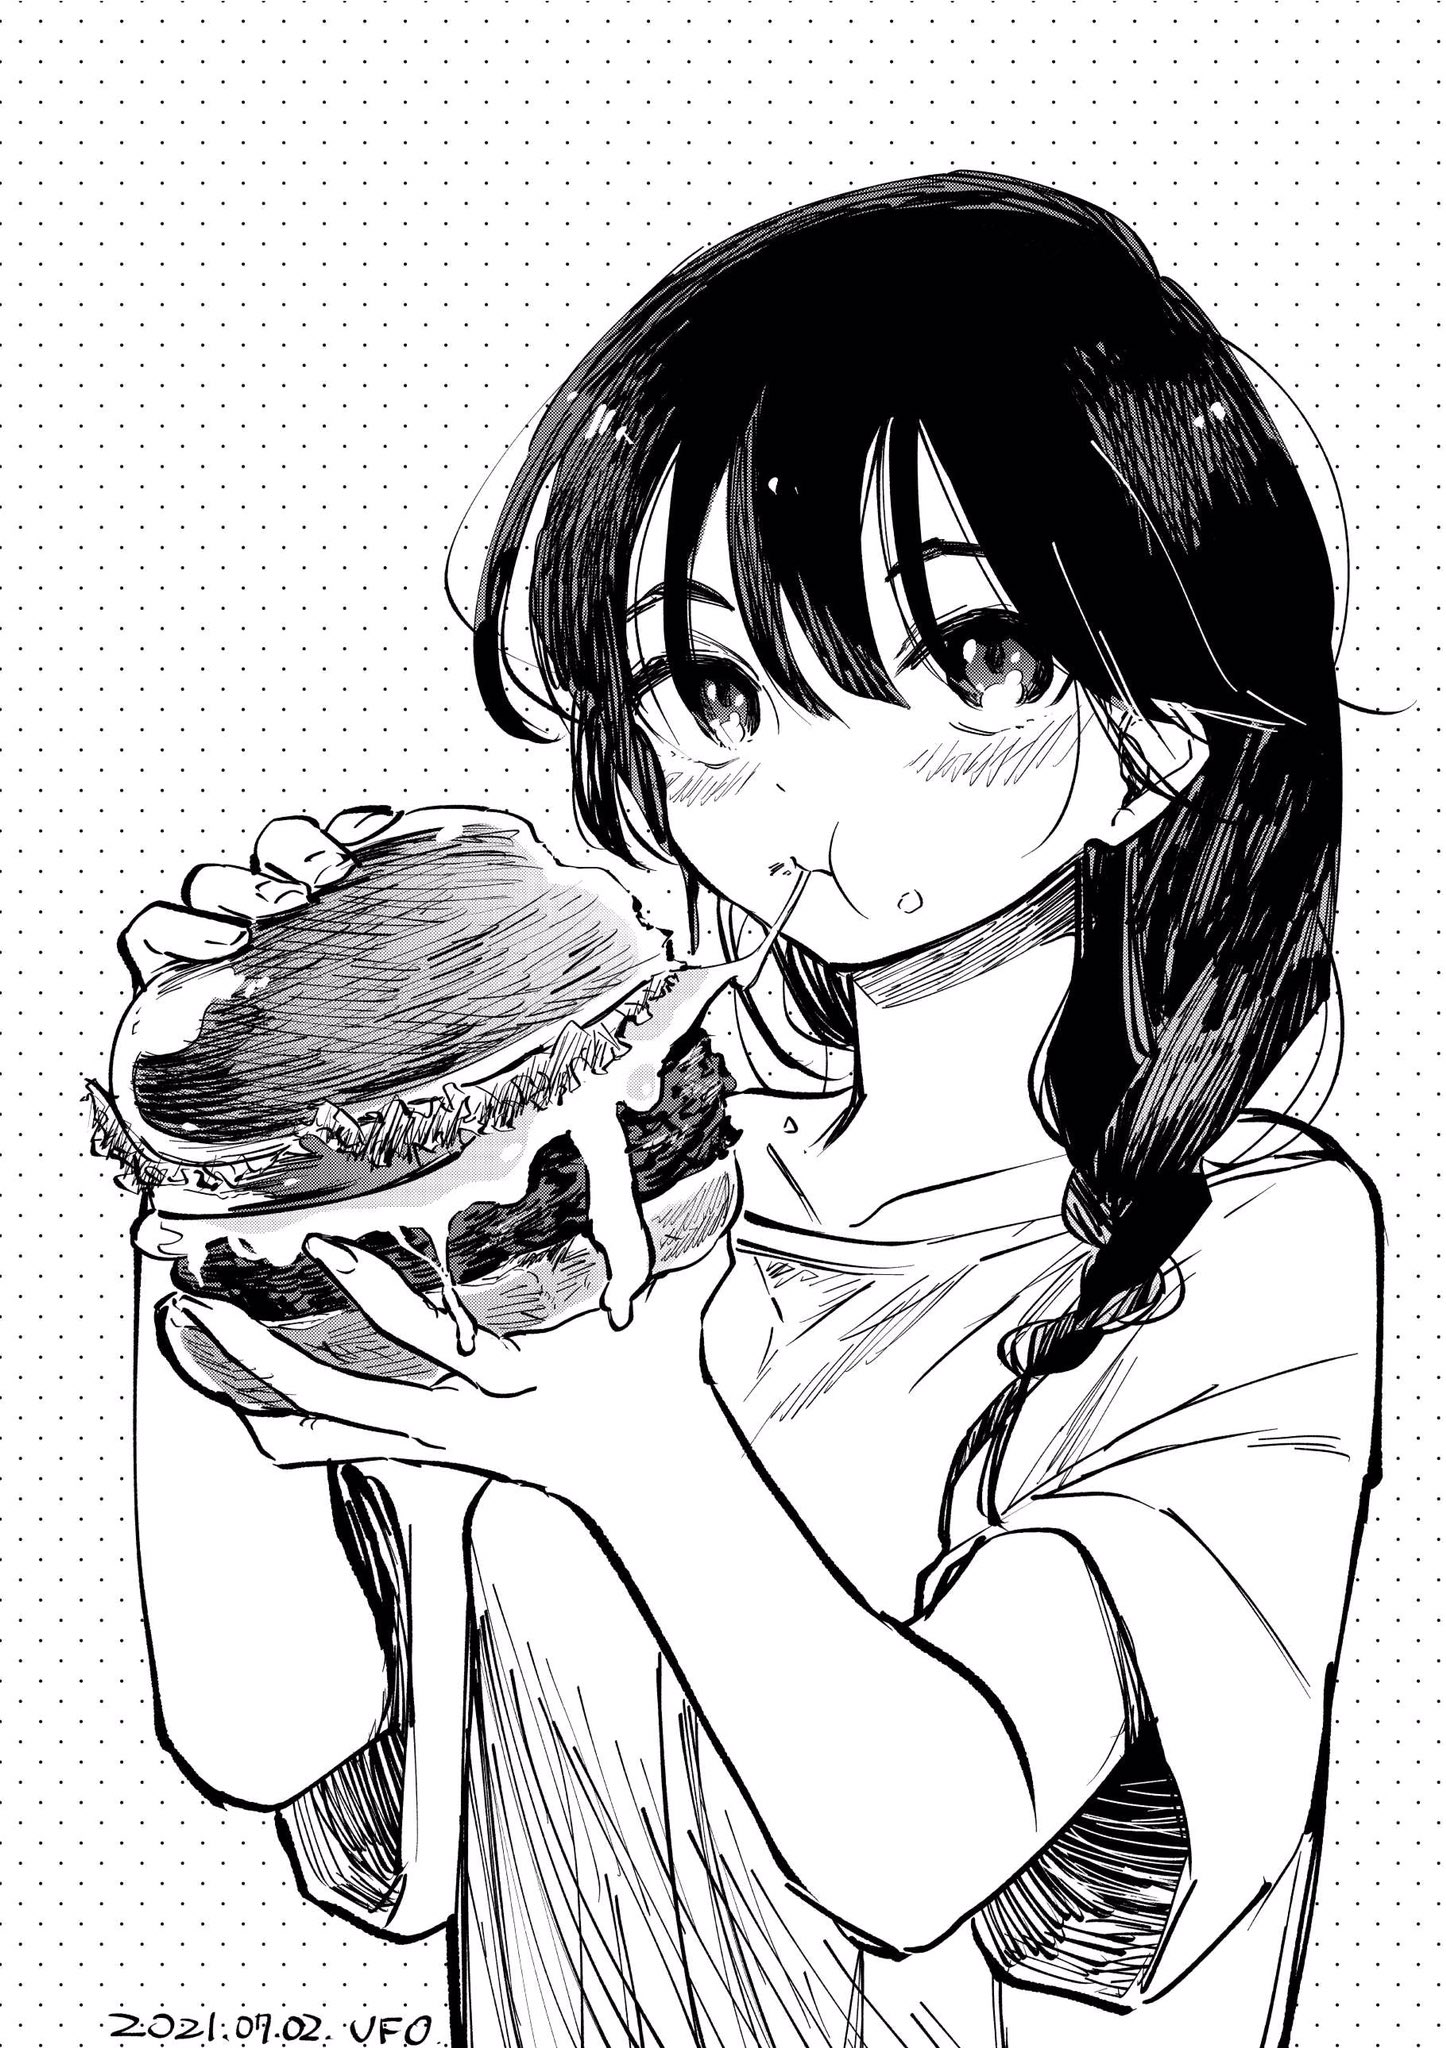 تويتر 野村ufo على تويتر モノクロで食べ物を描く練習 こんぐらいでかいハンバーガー食べてみたい 胃が爆発しそうだけど イラスト 女の子のイラストだけで興味を持ってくれる方へ届け T Co Rxnehxtwej